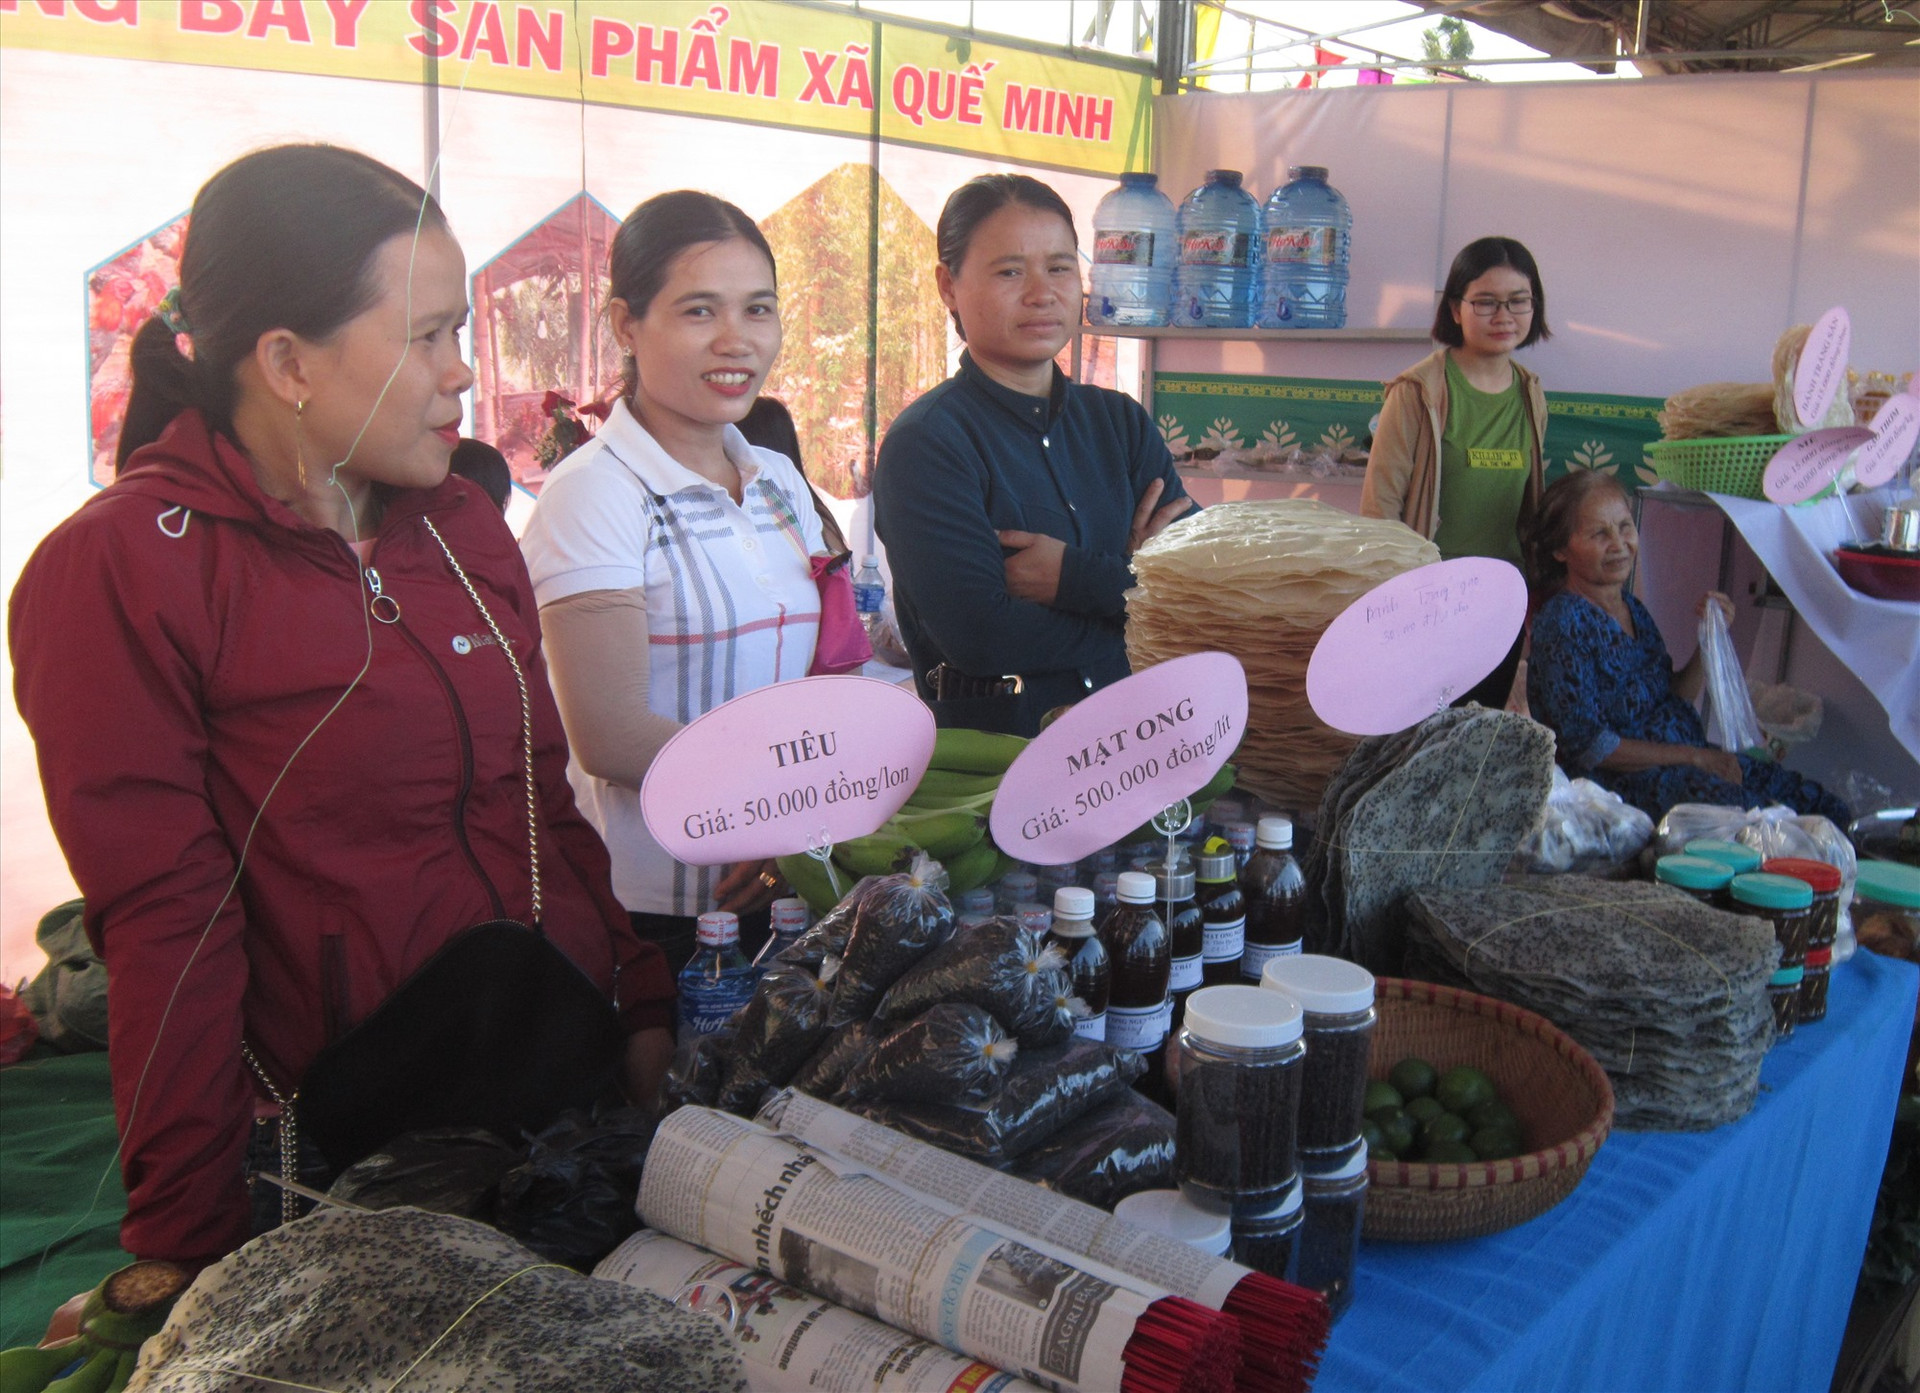 Người dân Quế Minh tham gia trưng bày, giới thiệu các loại sản phẩm tại hội chợ. Ảnh: N.Đ